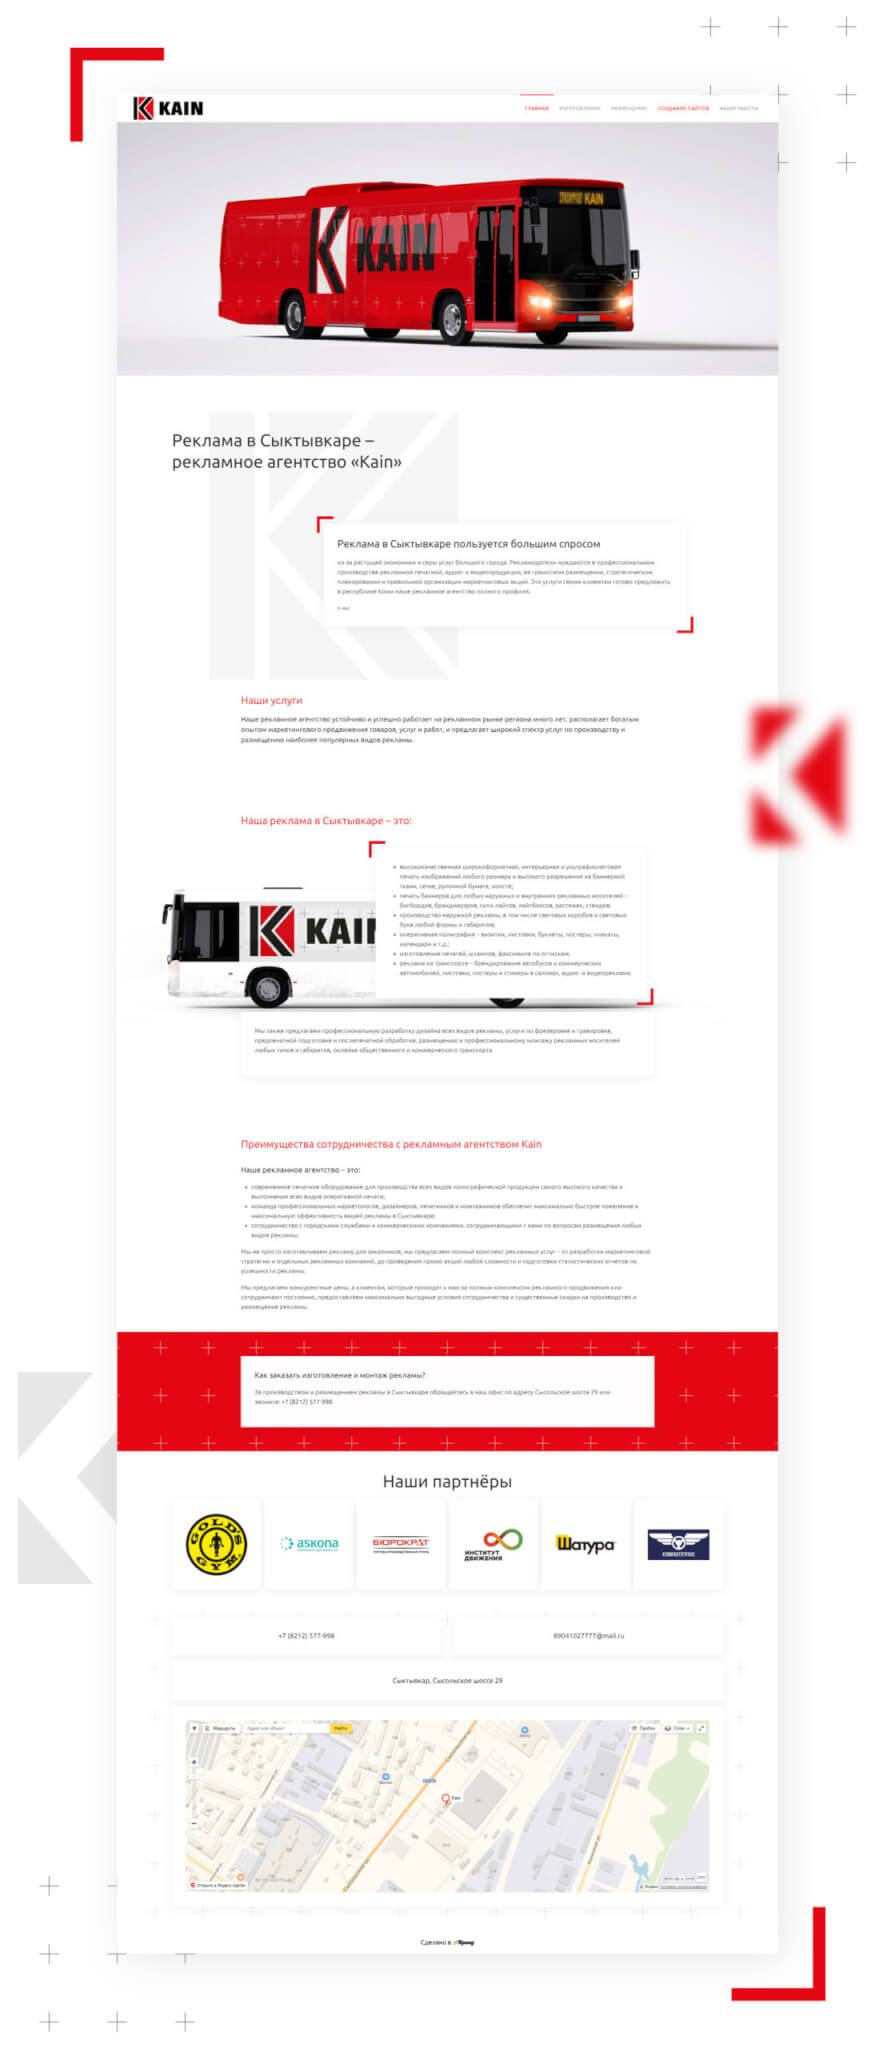 Создание сайта рекламного агентства «Kain»